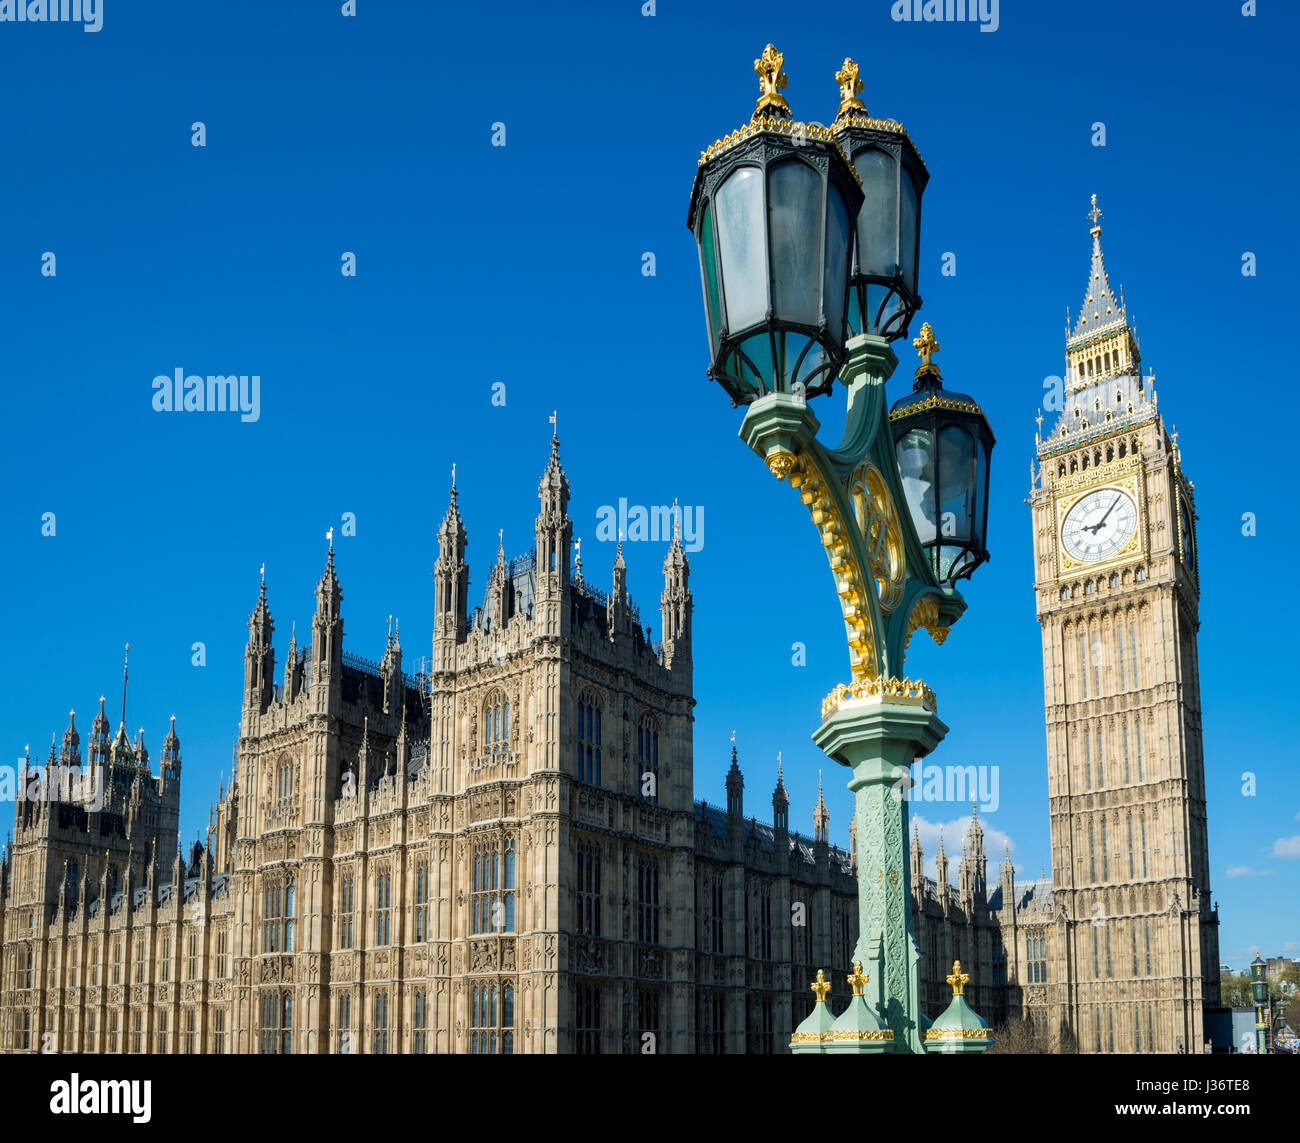 Ciel bleu matin vue sur Big Ben et les chambres du Parlement de Westminster Palace à proximité du pont de Londres, Angleterre Banque D'Images